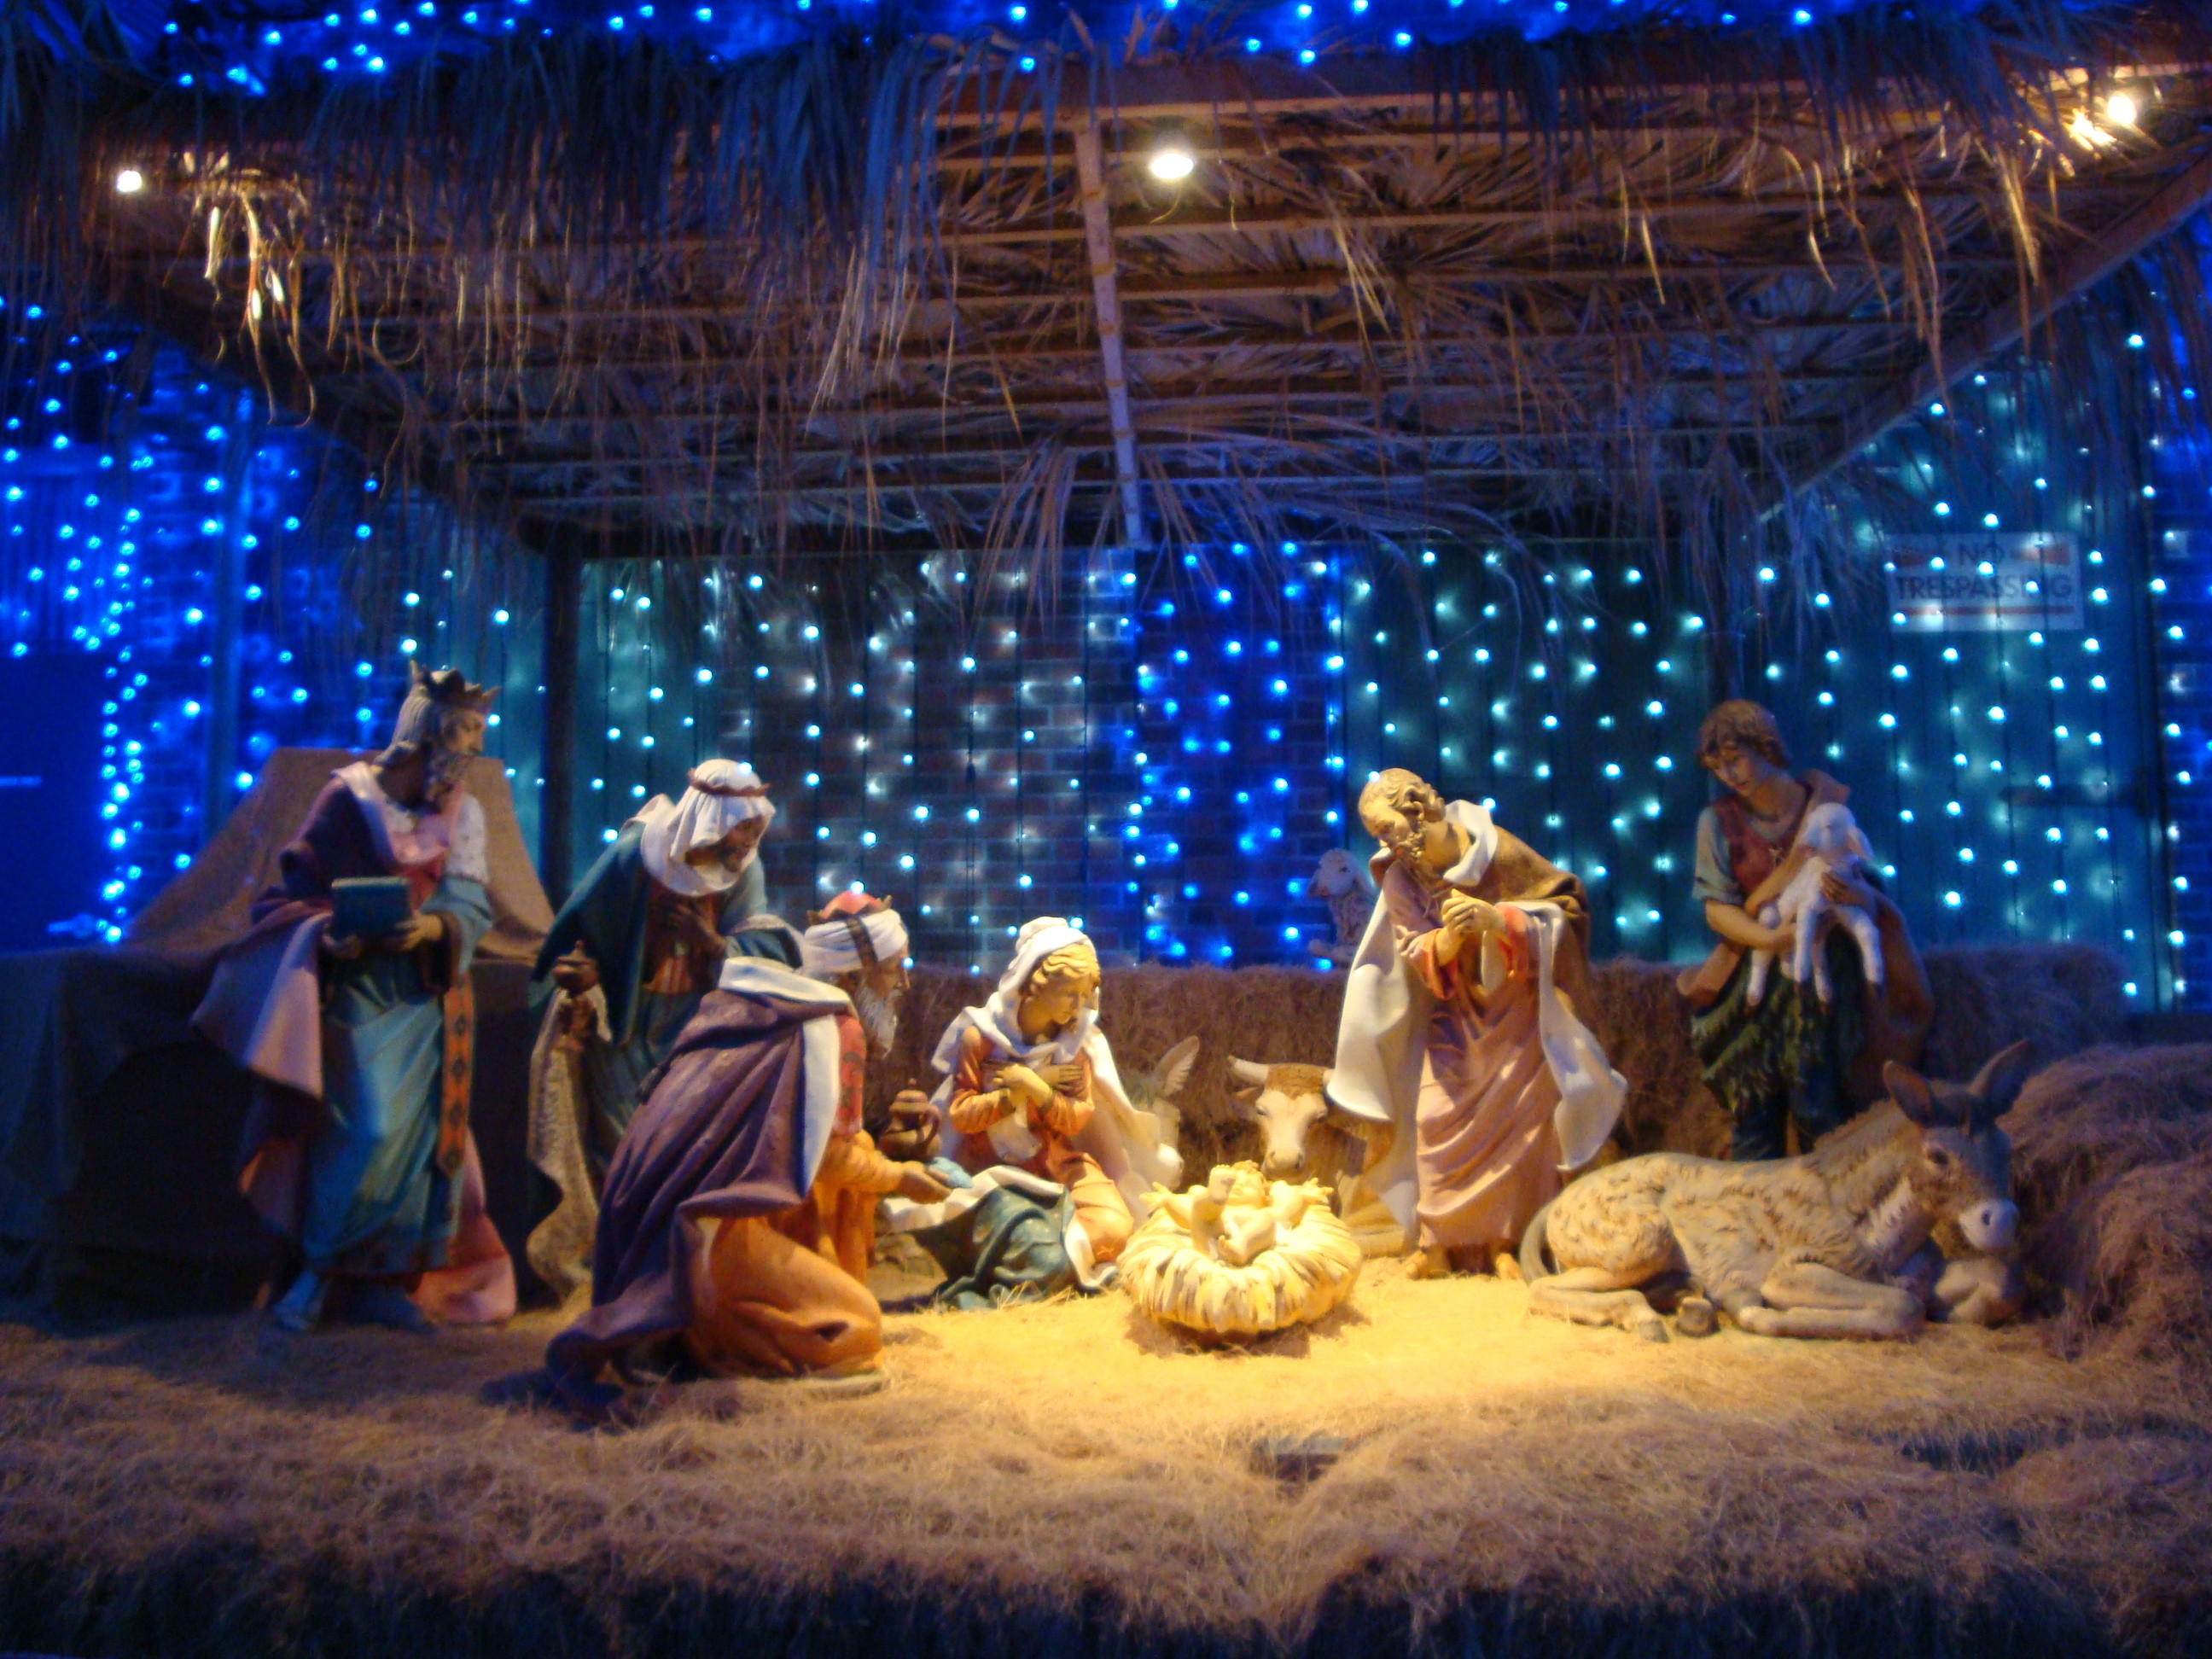 2592x1944 Nativity scene desktop clipart